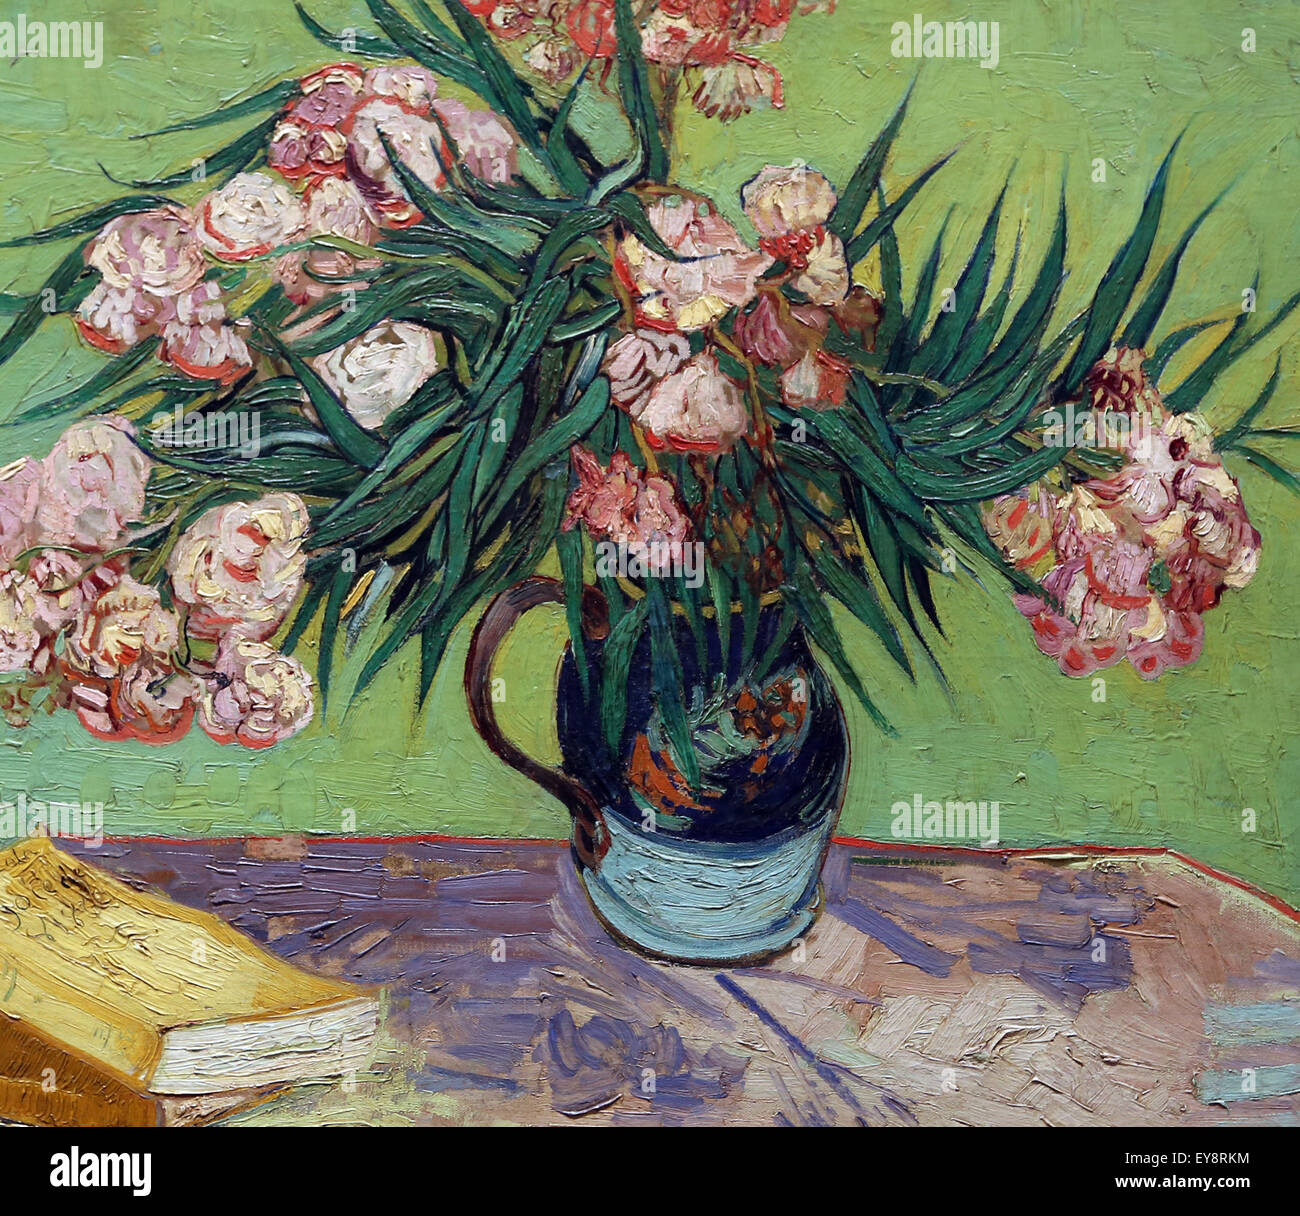 Vincent van Gogh (1853-1890). Pittore olandese. Oleandri, 1888. Olio su tela. Metropolitan Museum of Art. Ny. Stati Uniti d'America. Foto Stock